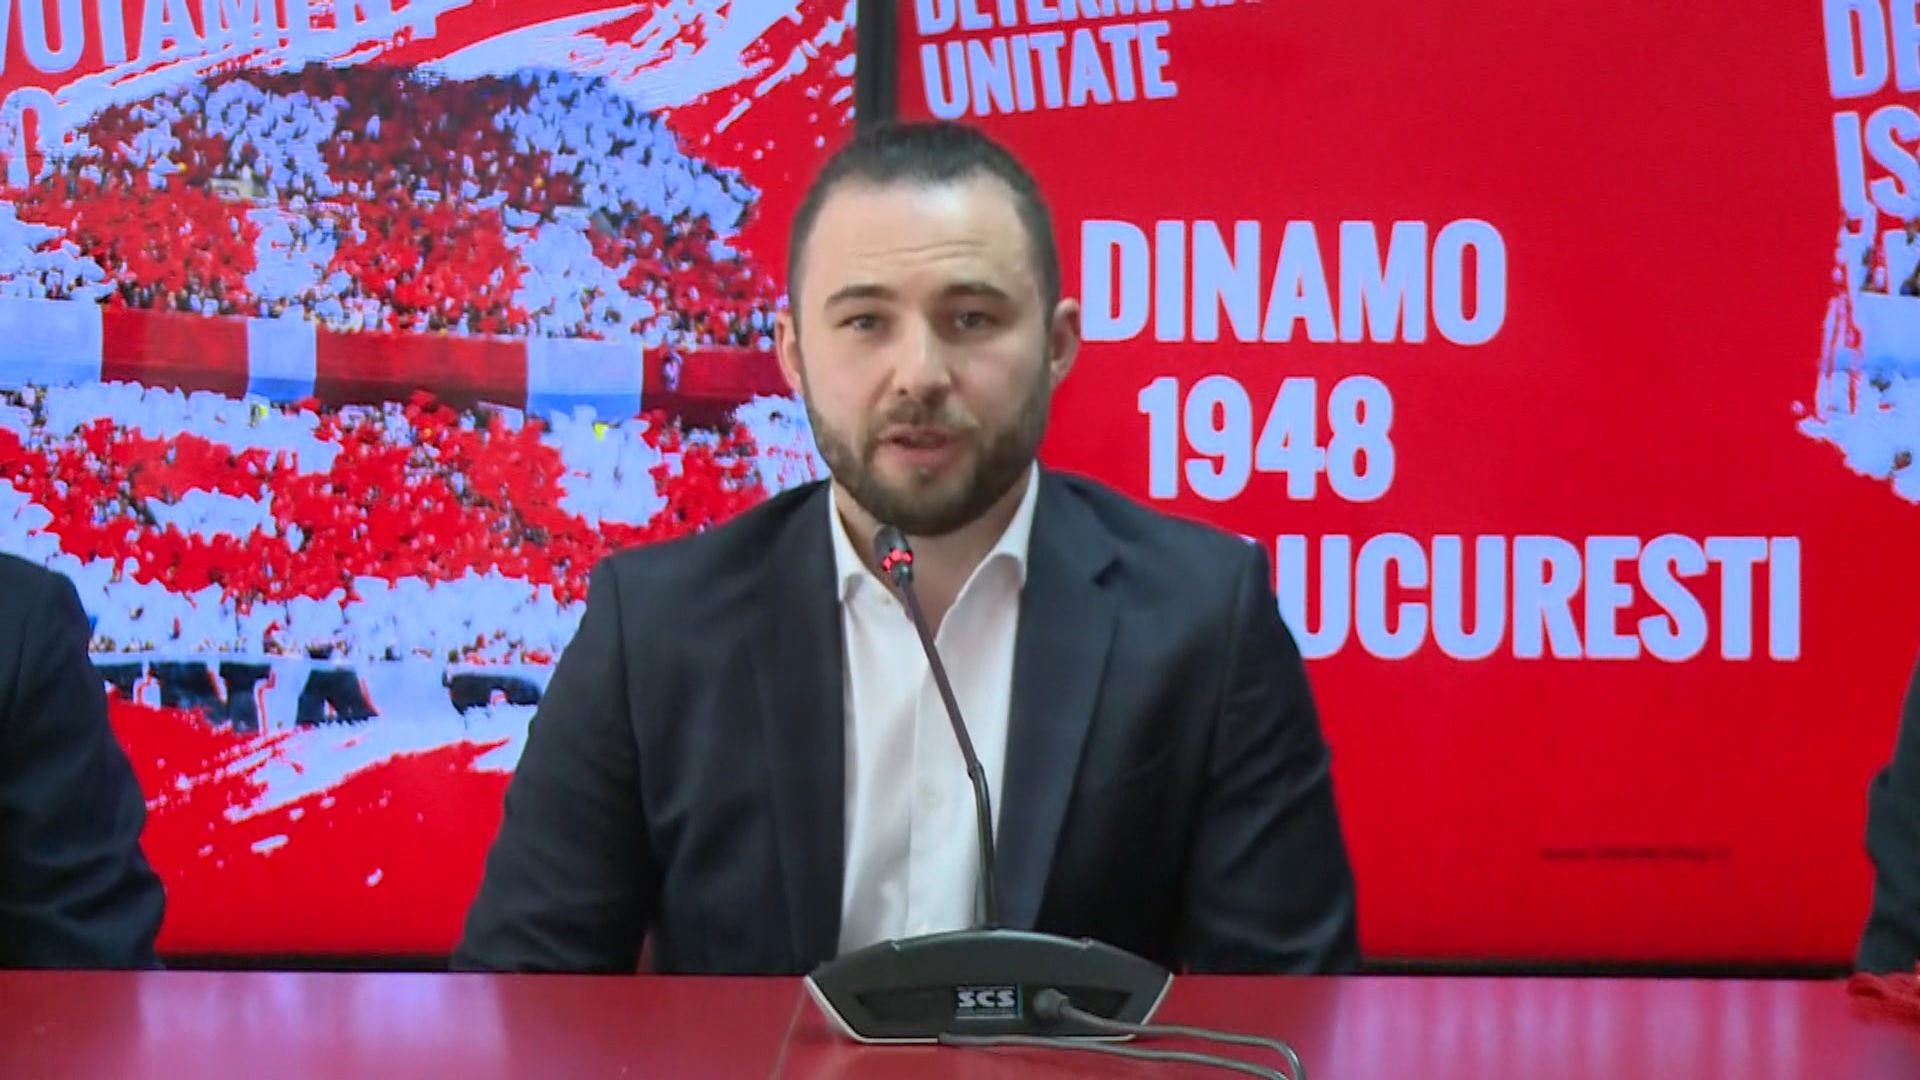 Se prelungește suspansul pentru Dinamo! Decizia instanței privind noul plan de reorganizare